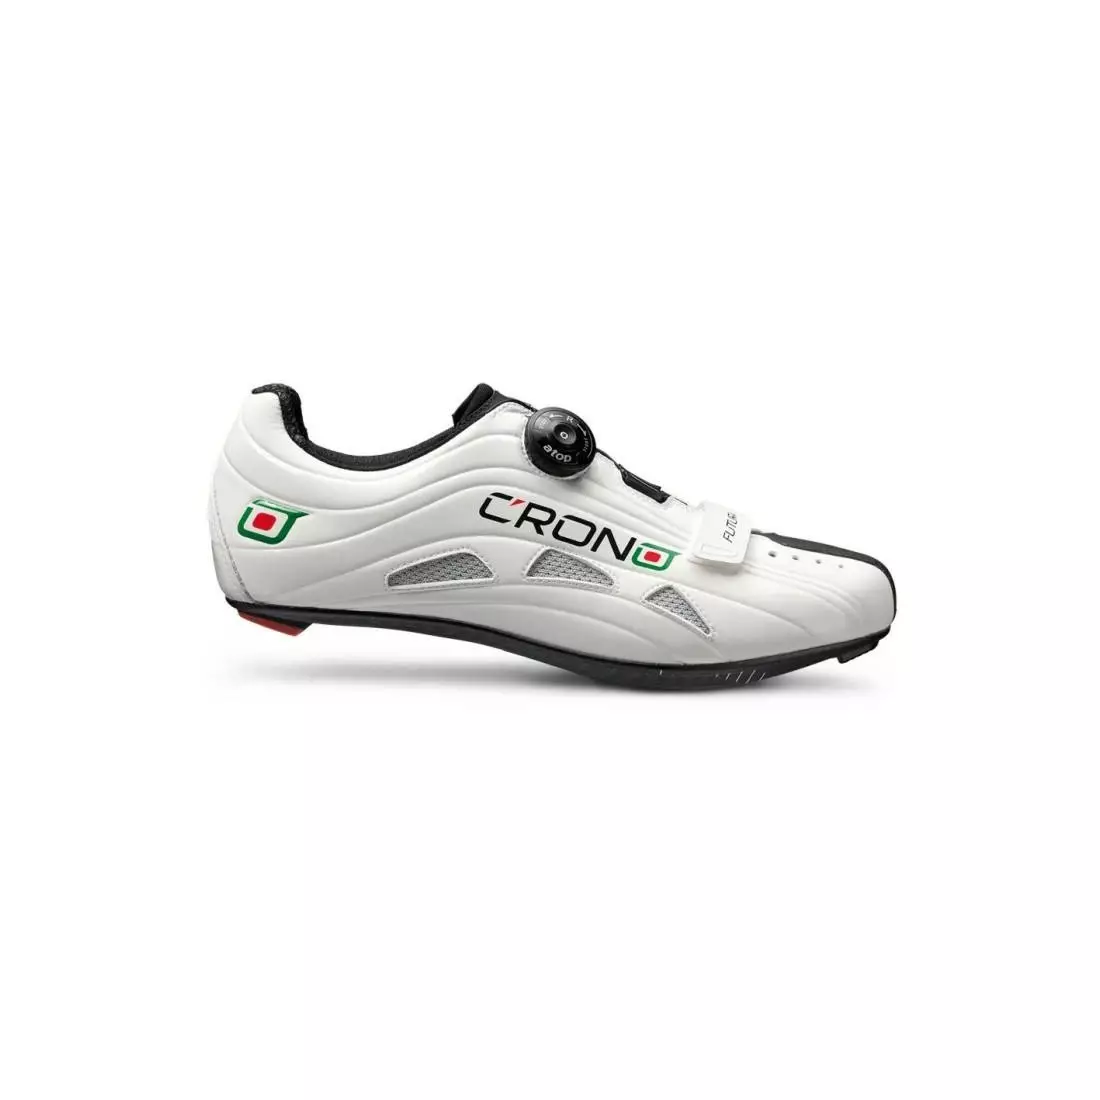 CRONO FUTURA NYLON - cestná cyklistická obuv - farba: Biela